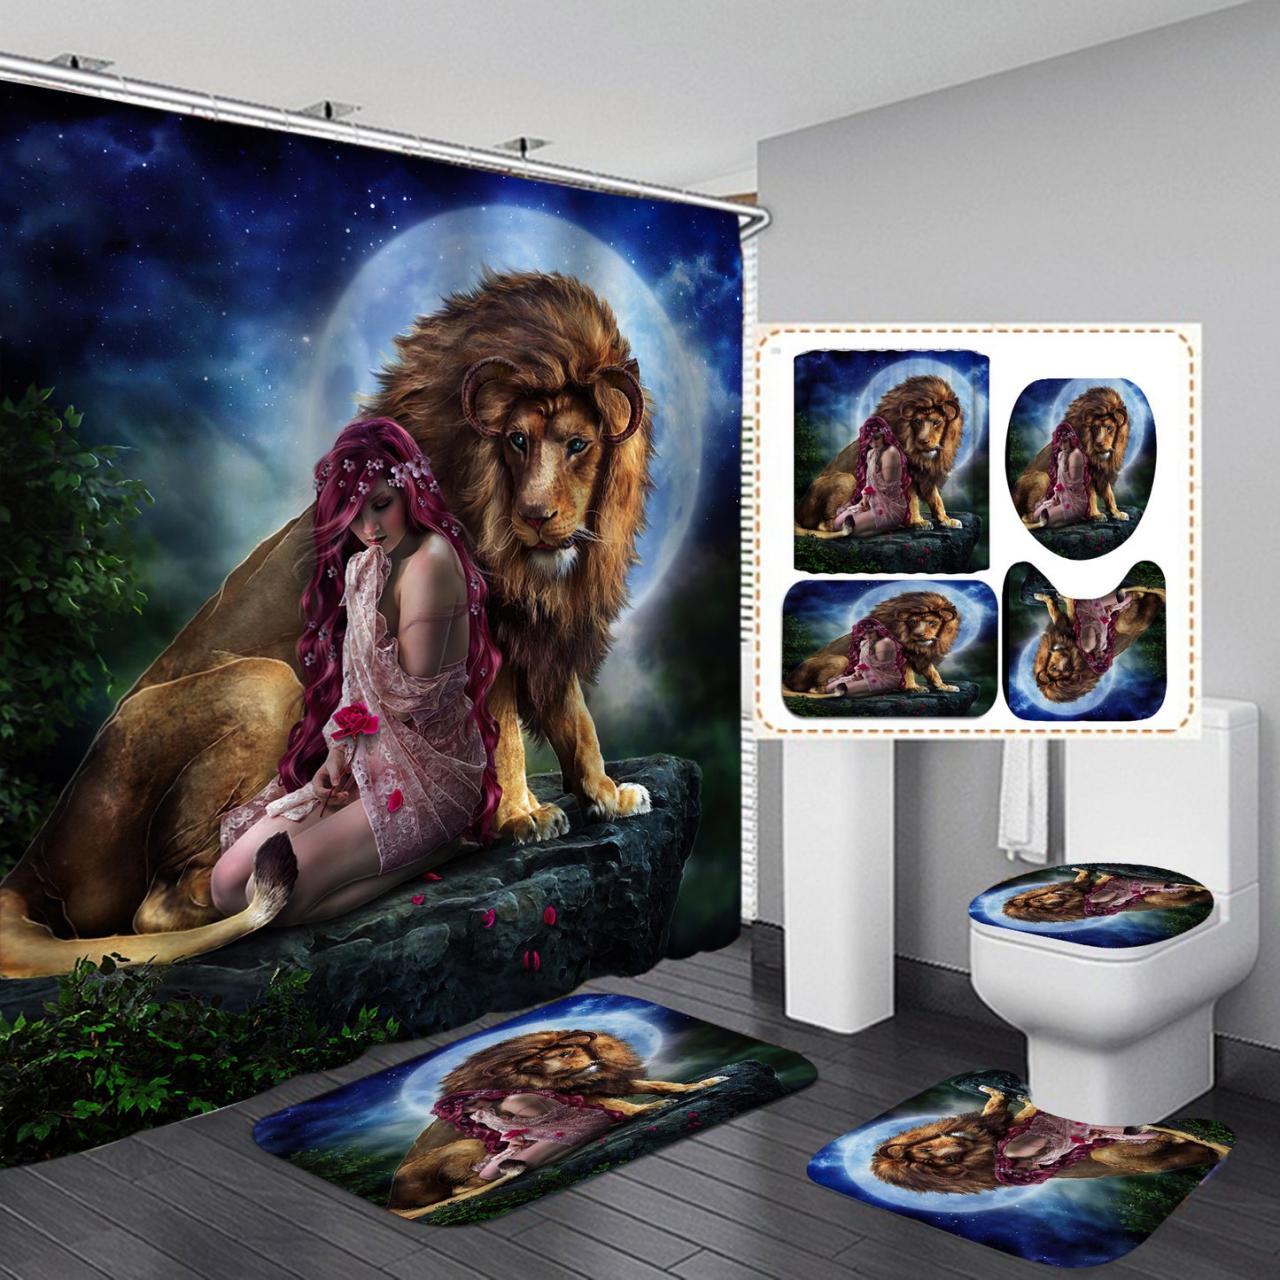 3d Lion & Beauty Design Shower Curtain Bathroom Sets Non-slip Toilet Lid Cover